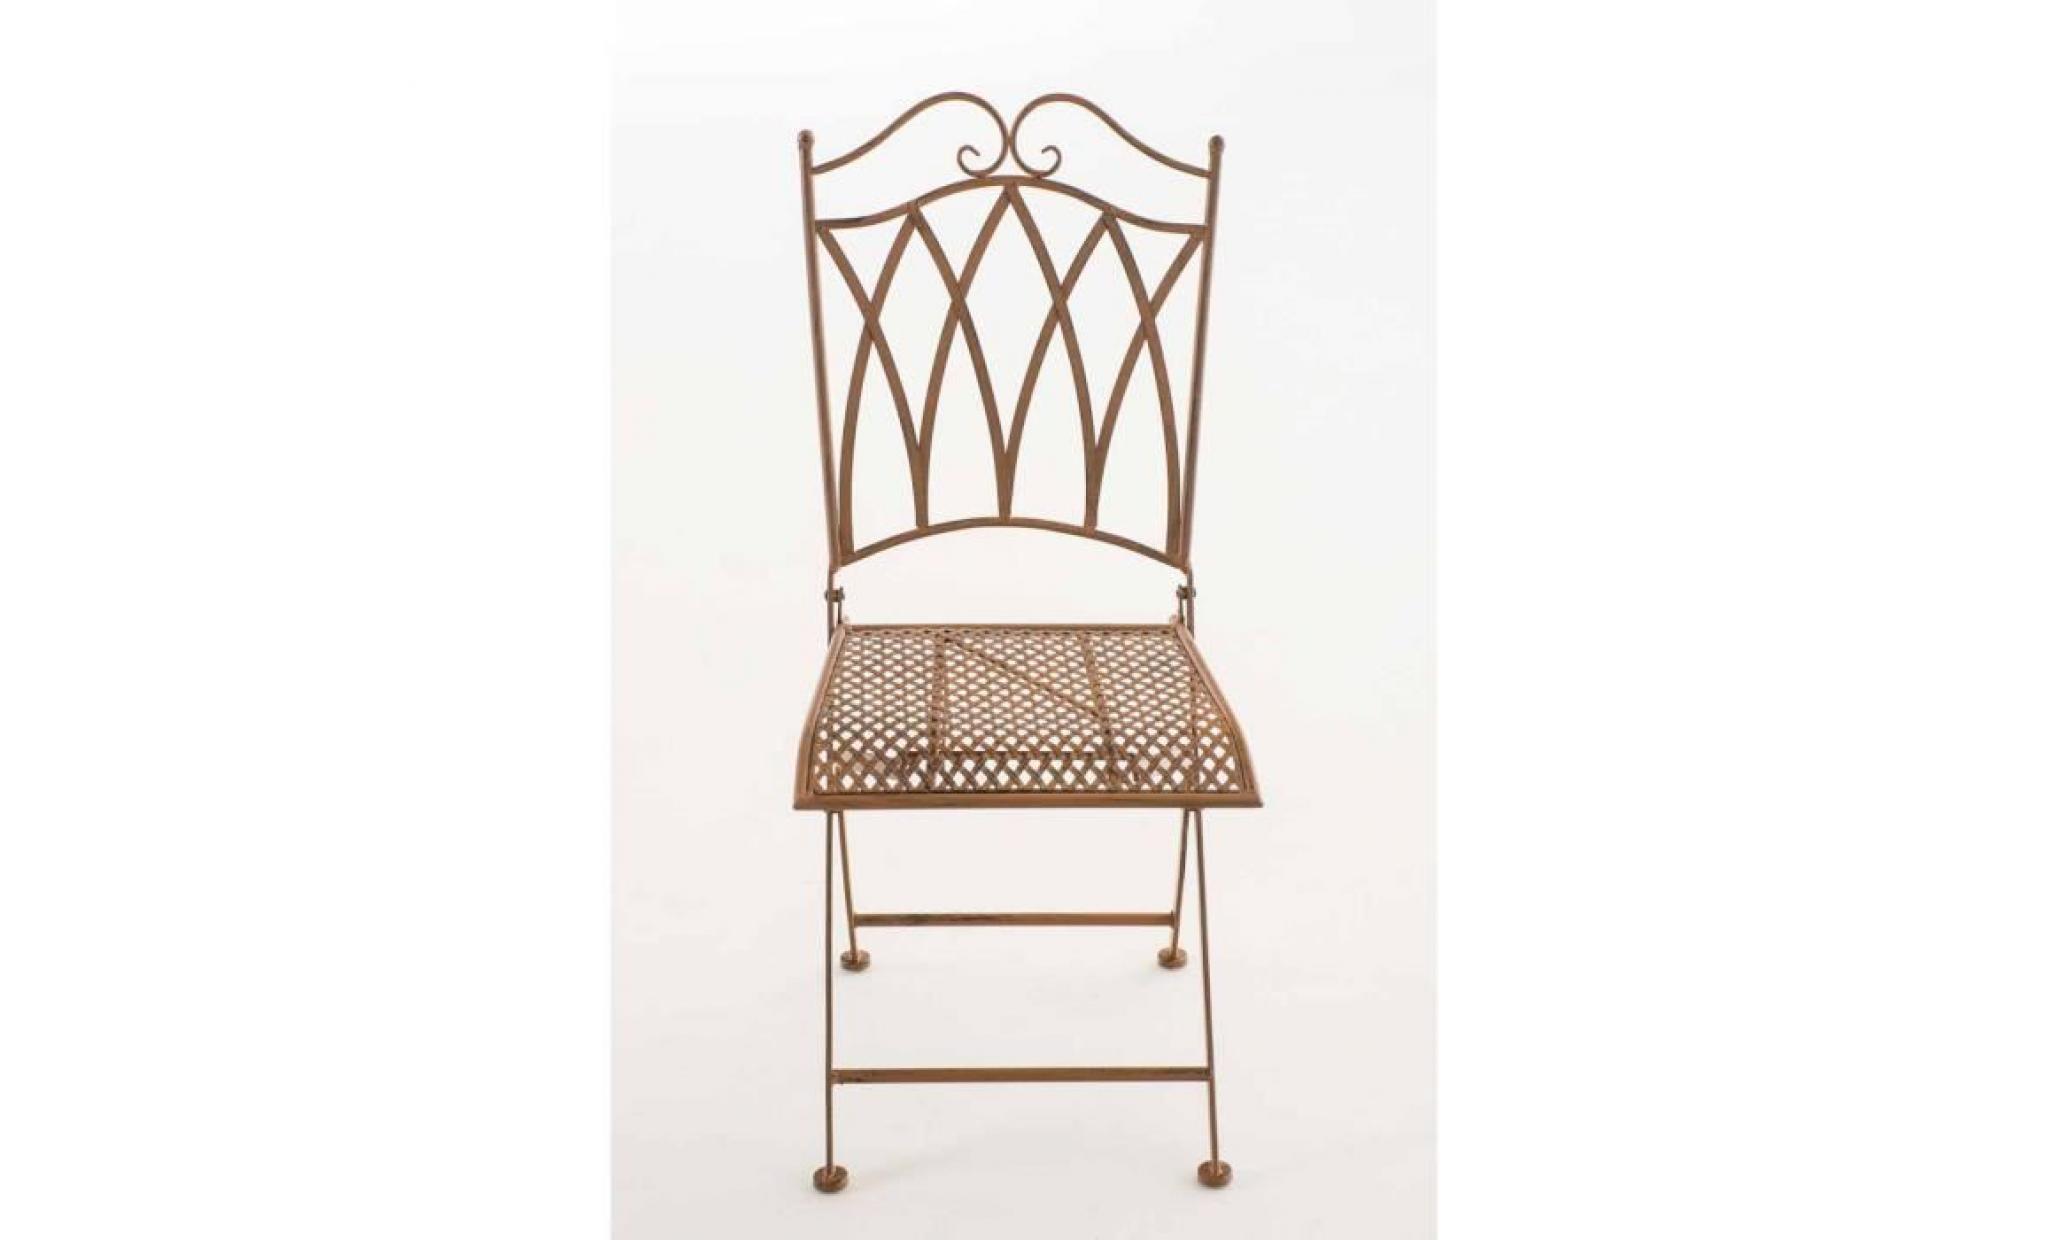 clp chaise nostalgique pliable lunis, chaise fer forgé, chaise pliante, chaise antique, 6 couleurs au choix 91 cm bronze pas cher